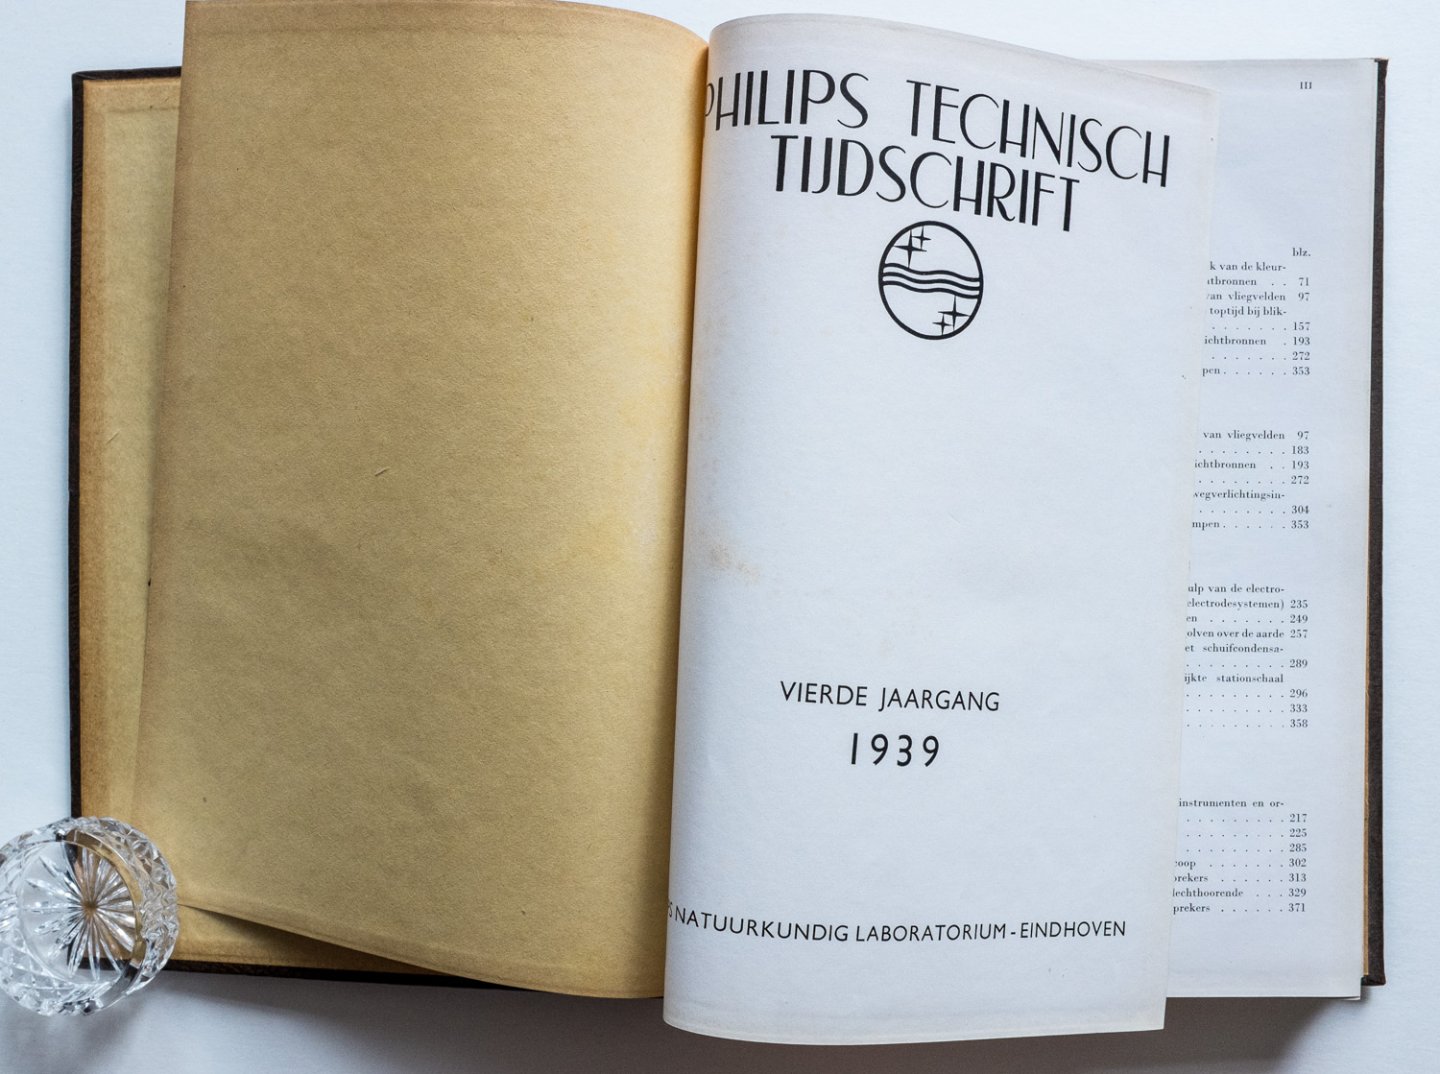 Philips natuurkundig laboratorium - Philips Technisch Tijdschrift - 4e jaargang 1939